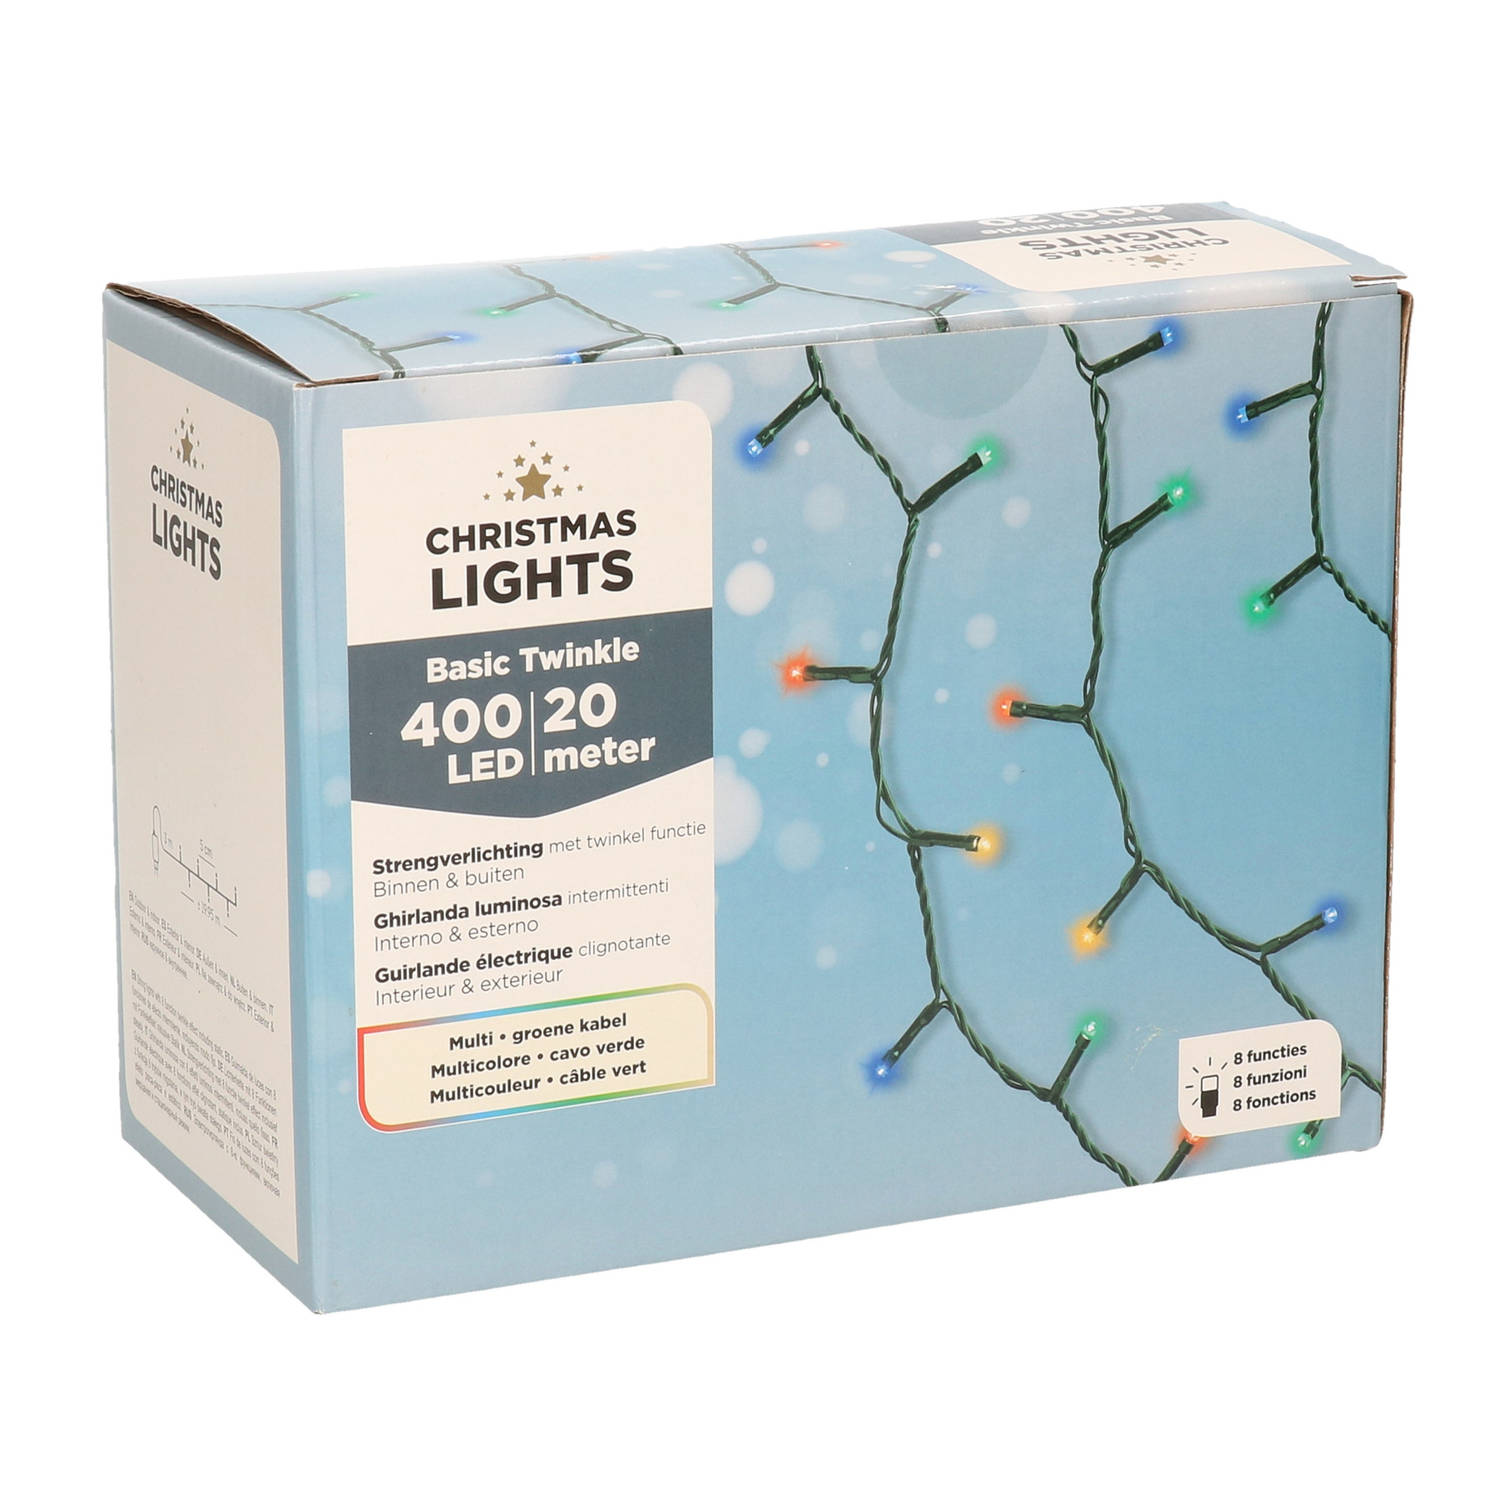 Kerstverlichting met 8 functie twinkel effect gekleurd 400 lampjes 1995 cm - Kerstverlichting kerstboom